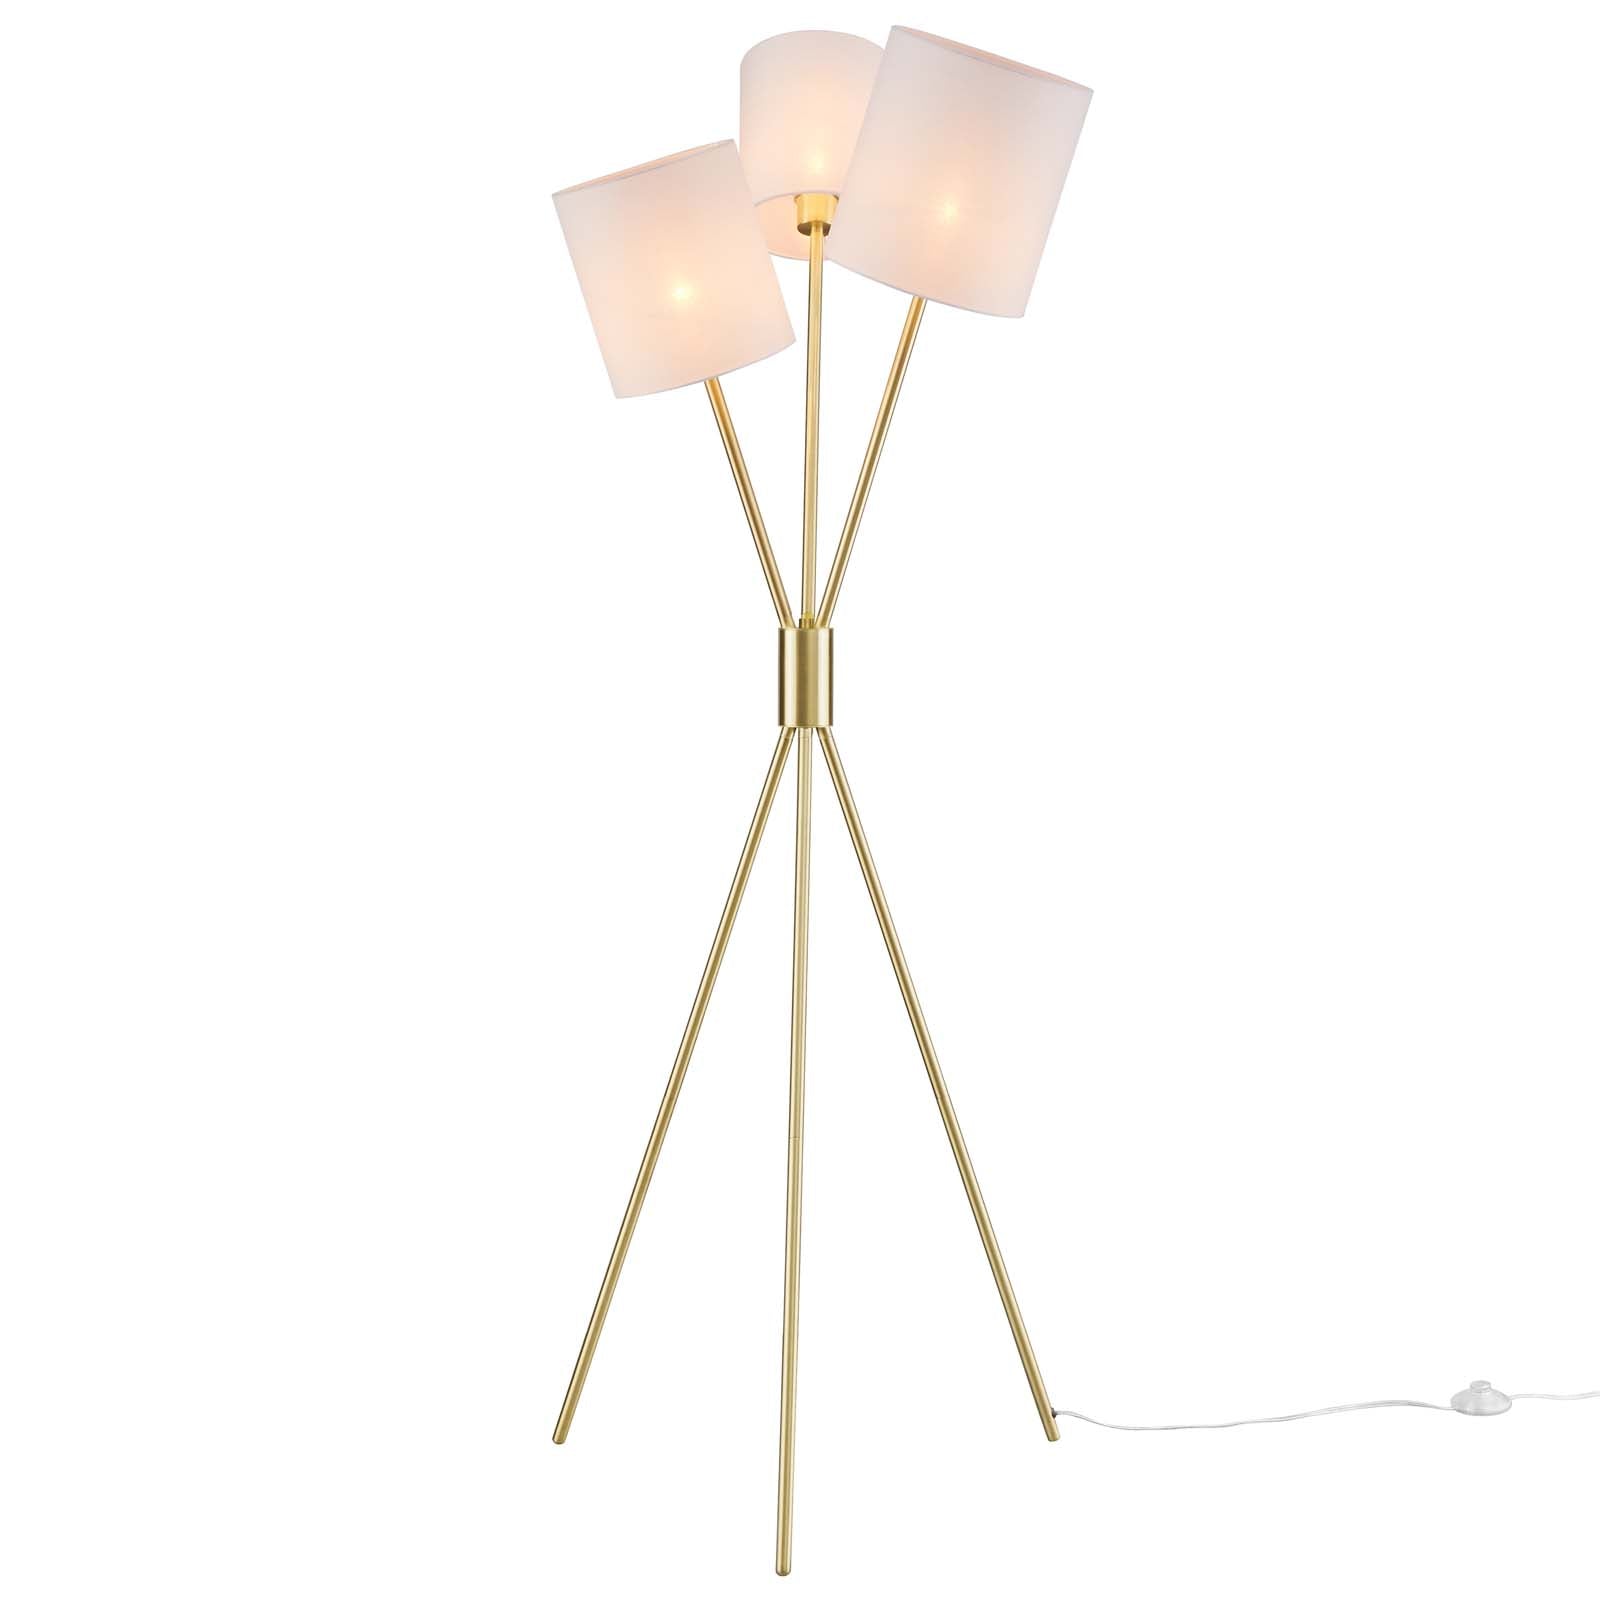 Modway Floor Lamps - Alexa 3-Light Floor Lamp Gold